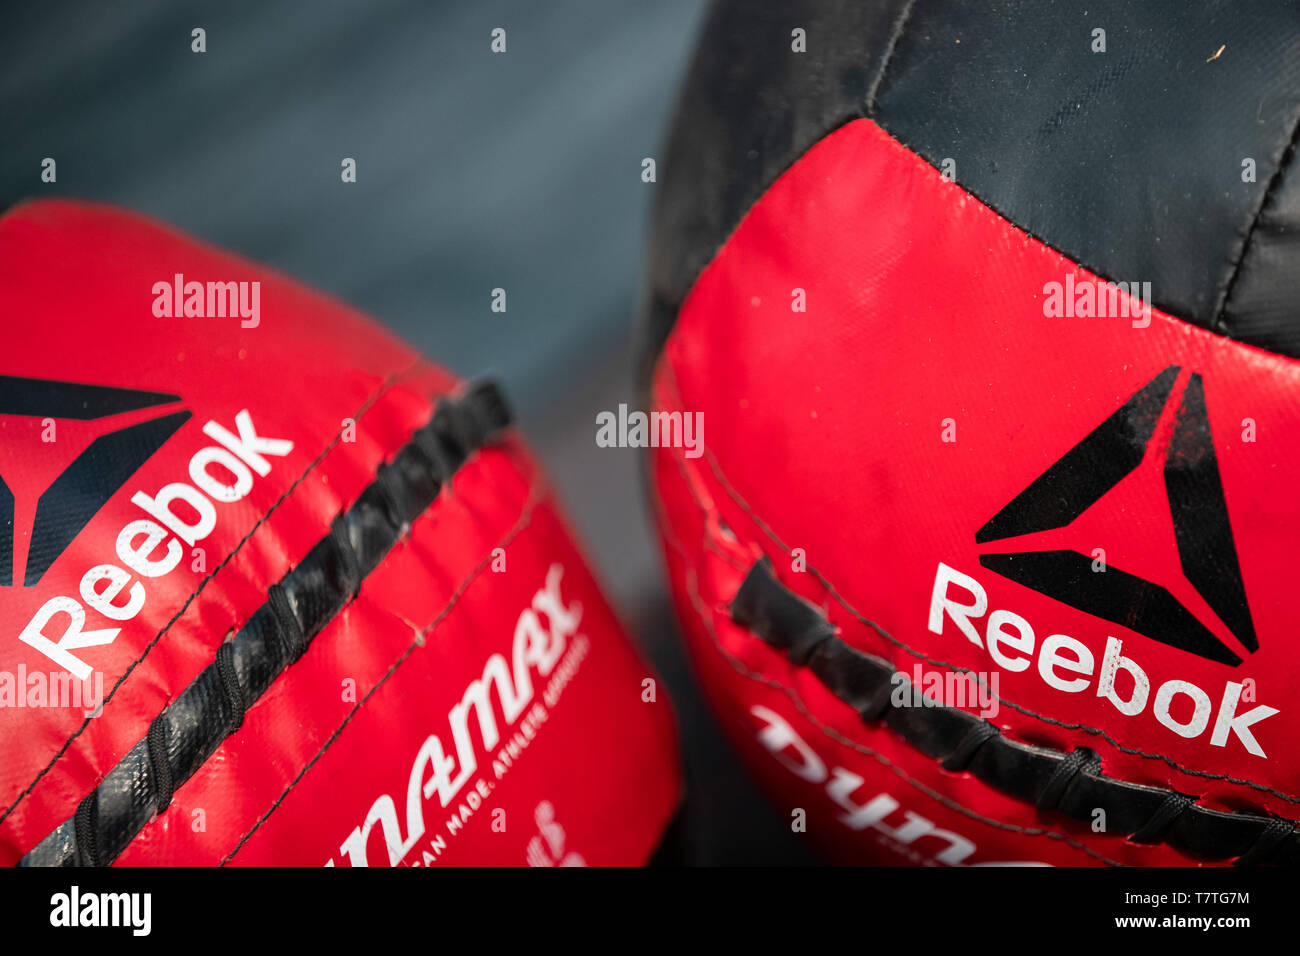 Reebok Brand Banque d'image et photos - Alamy